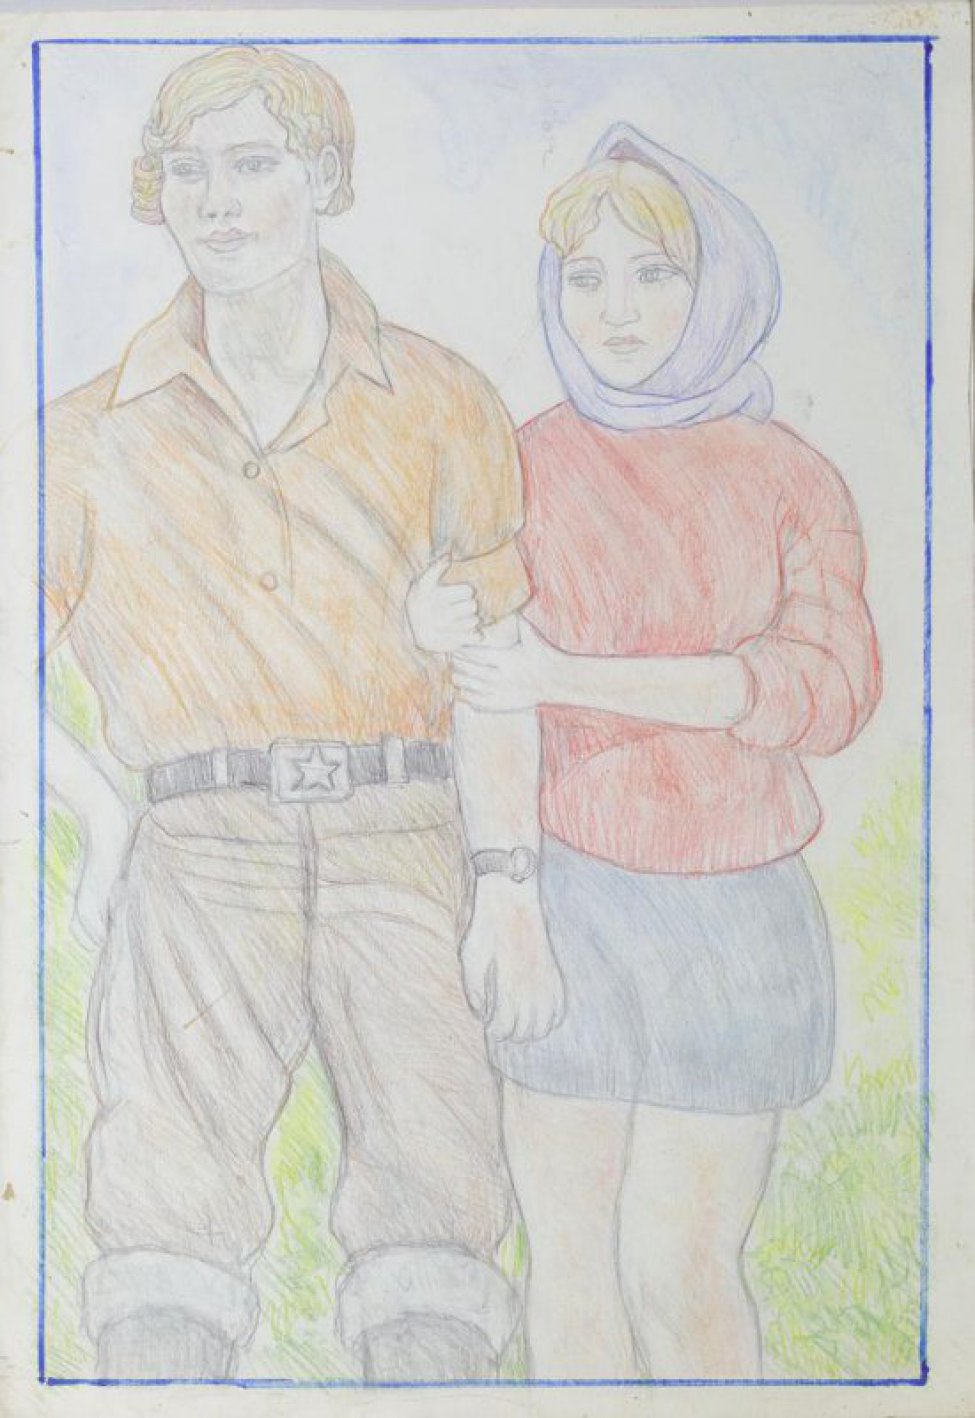 Изображение заключено в синюю рамку. На фоне летнего пейзажа поколенное изображение рыжеволосого юноши в коричневой рубашке и брюках и держащей его под руку светловолосой девушки в голубом платке, красном свитере и синей короткой юбке.